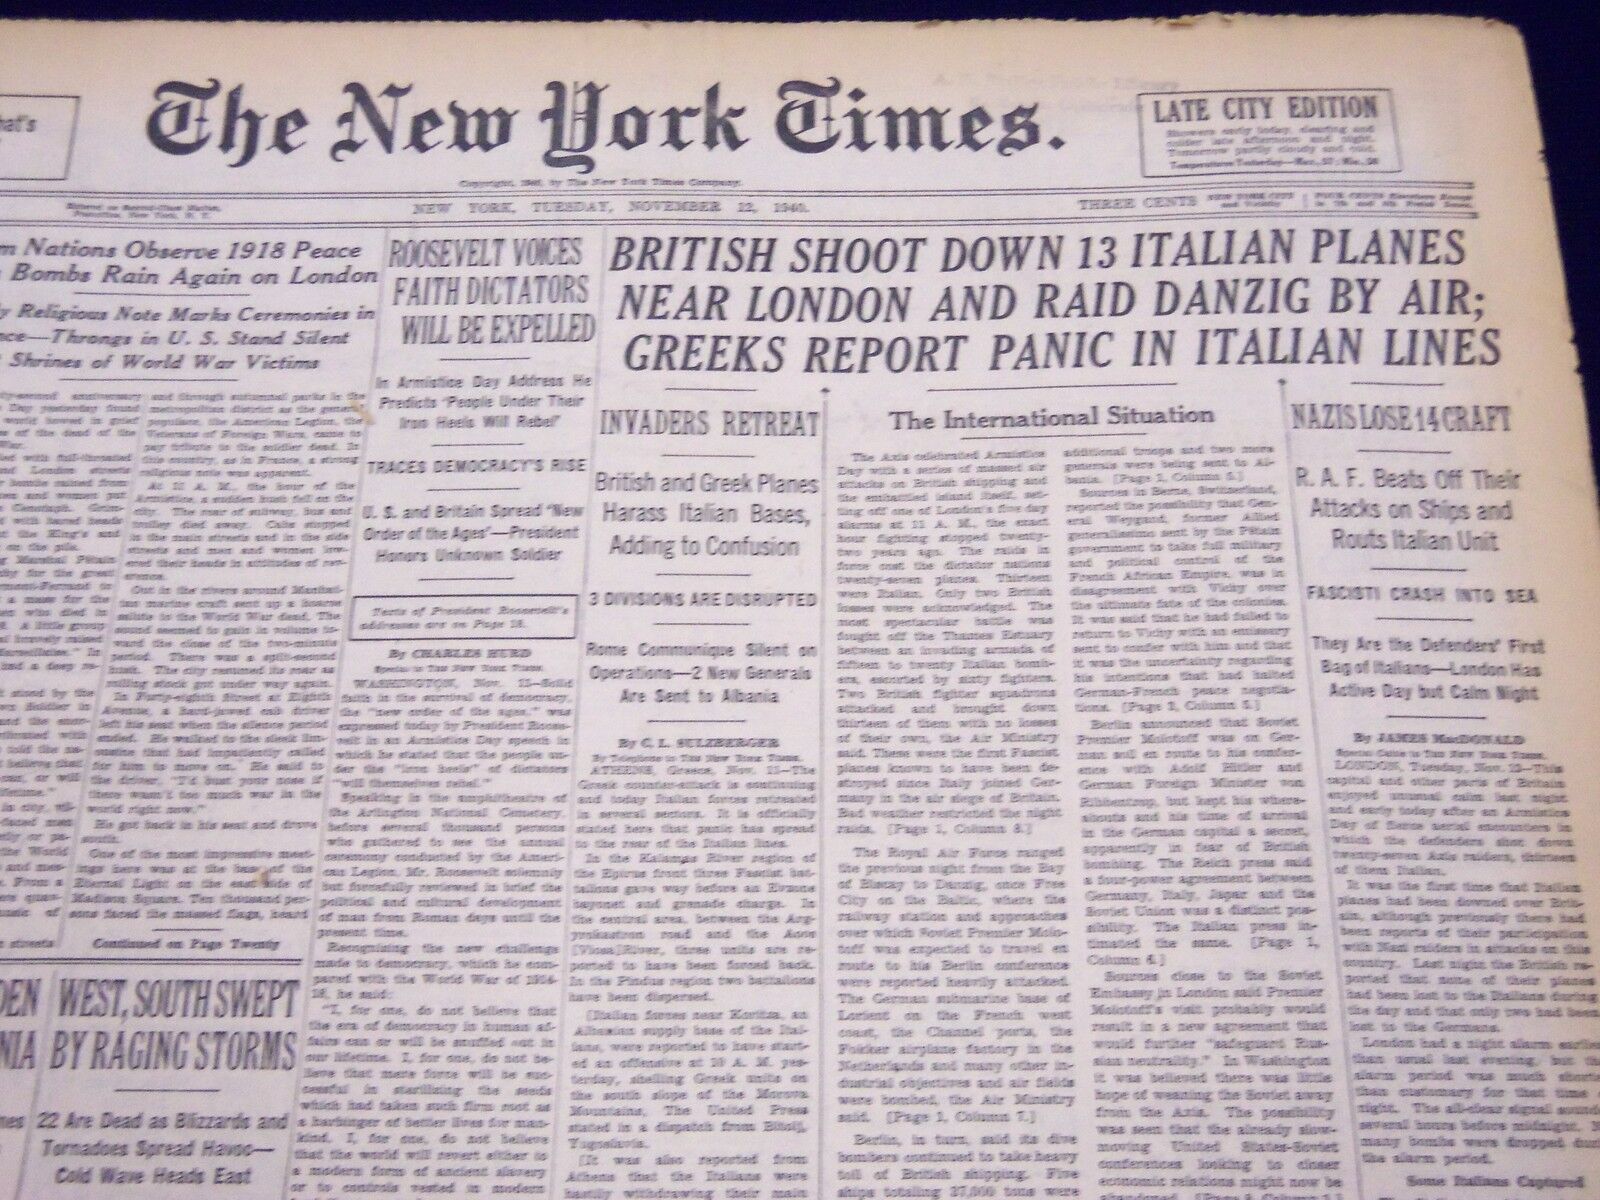 1940 NOV 12 NEW YORK TIMES - BRITISH SHOOT DOWN 13 ITALIAN PLANES - NT 330